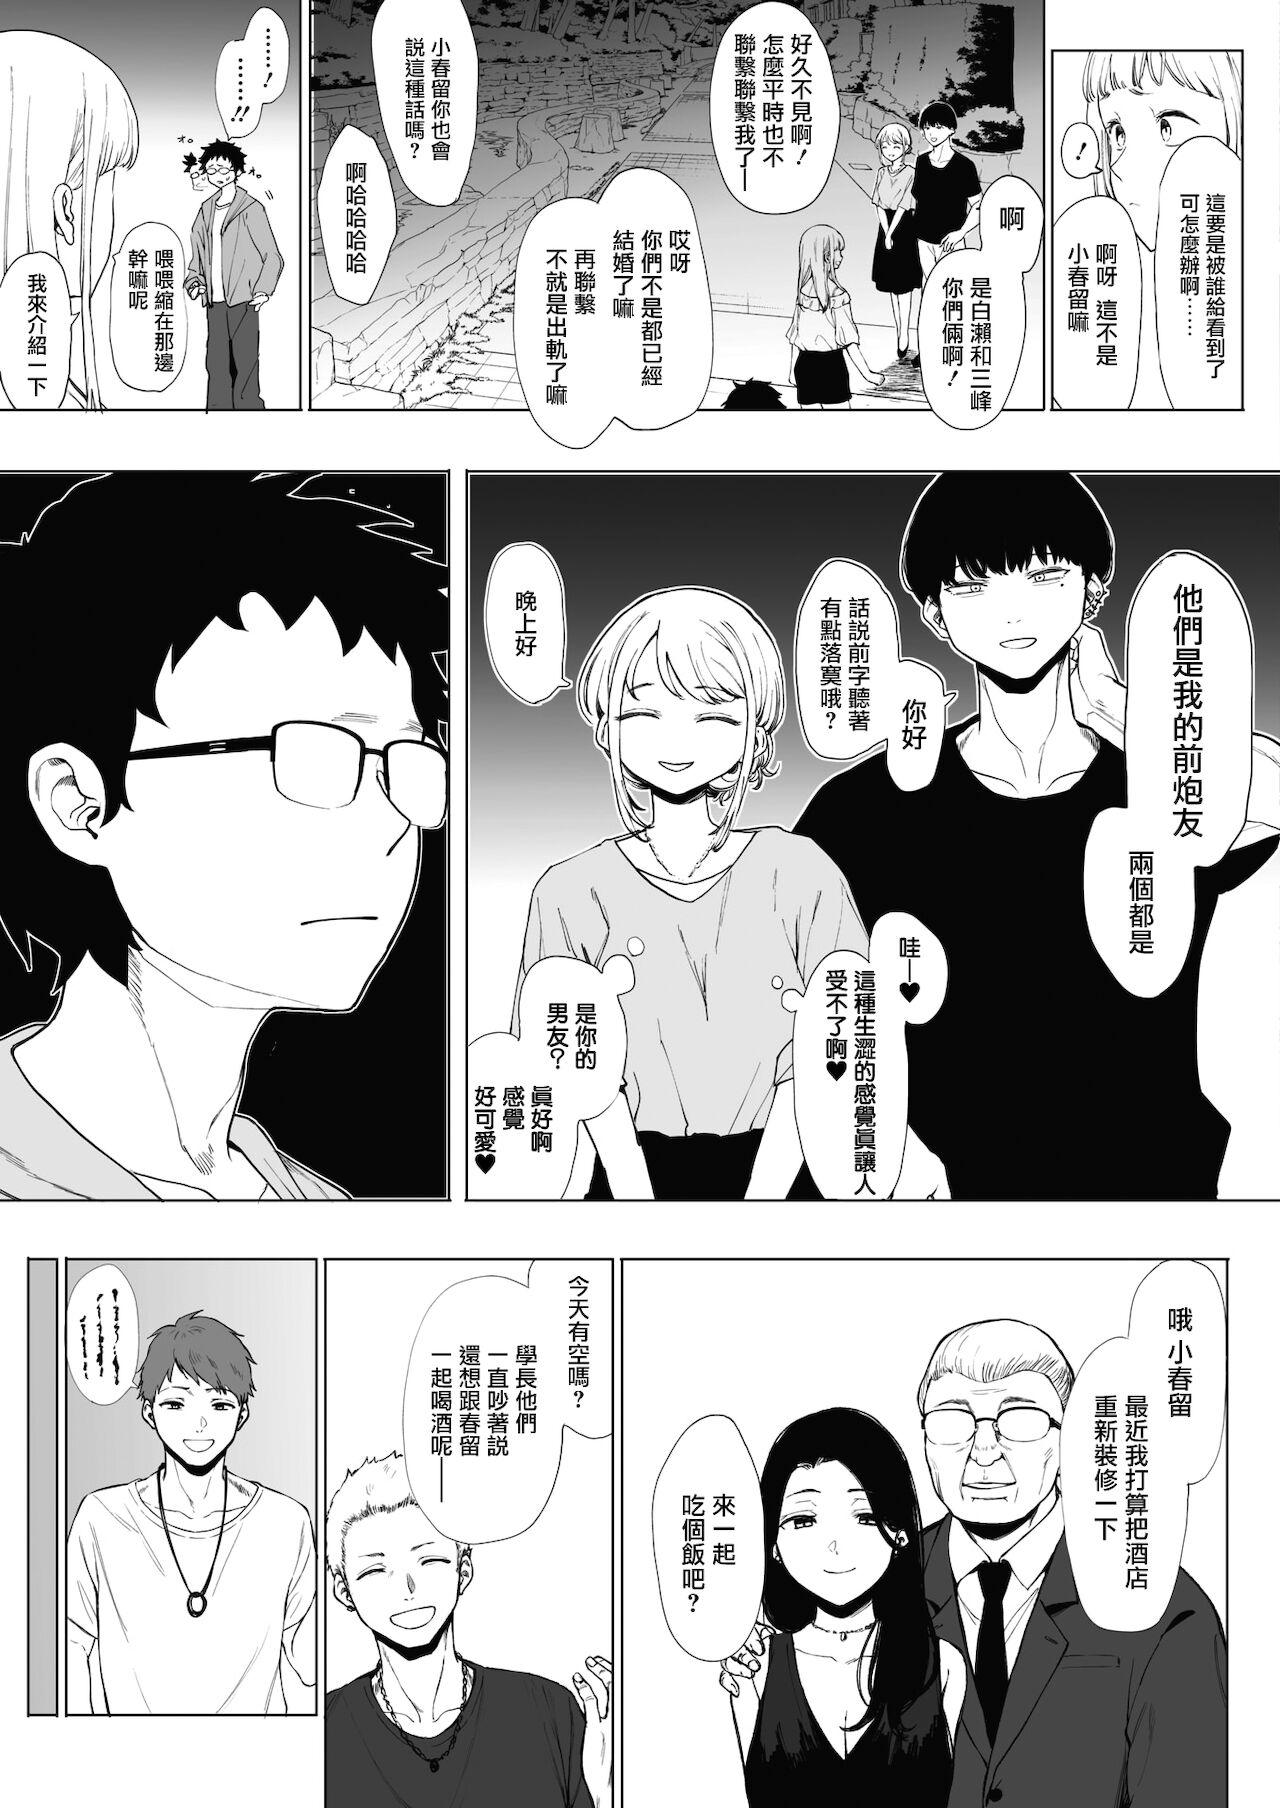 EIGHTMANsensei no okage de Kanojo ga dekimashita! 2 | I Got a Girlfriend with Eightman-sensei's Help! 2 16